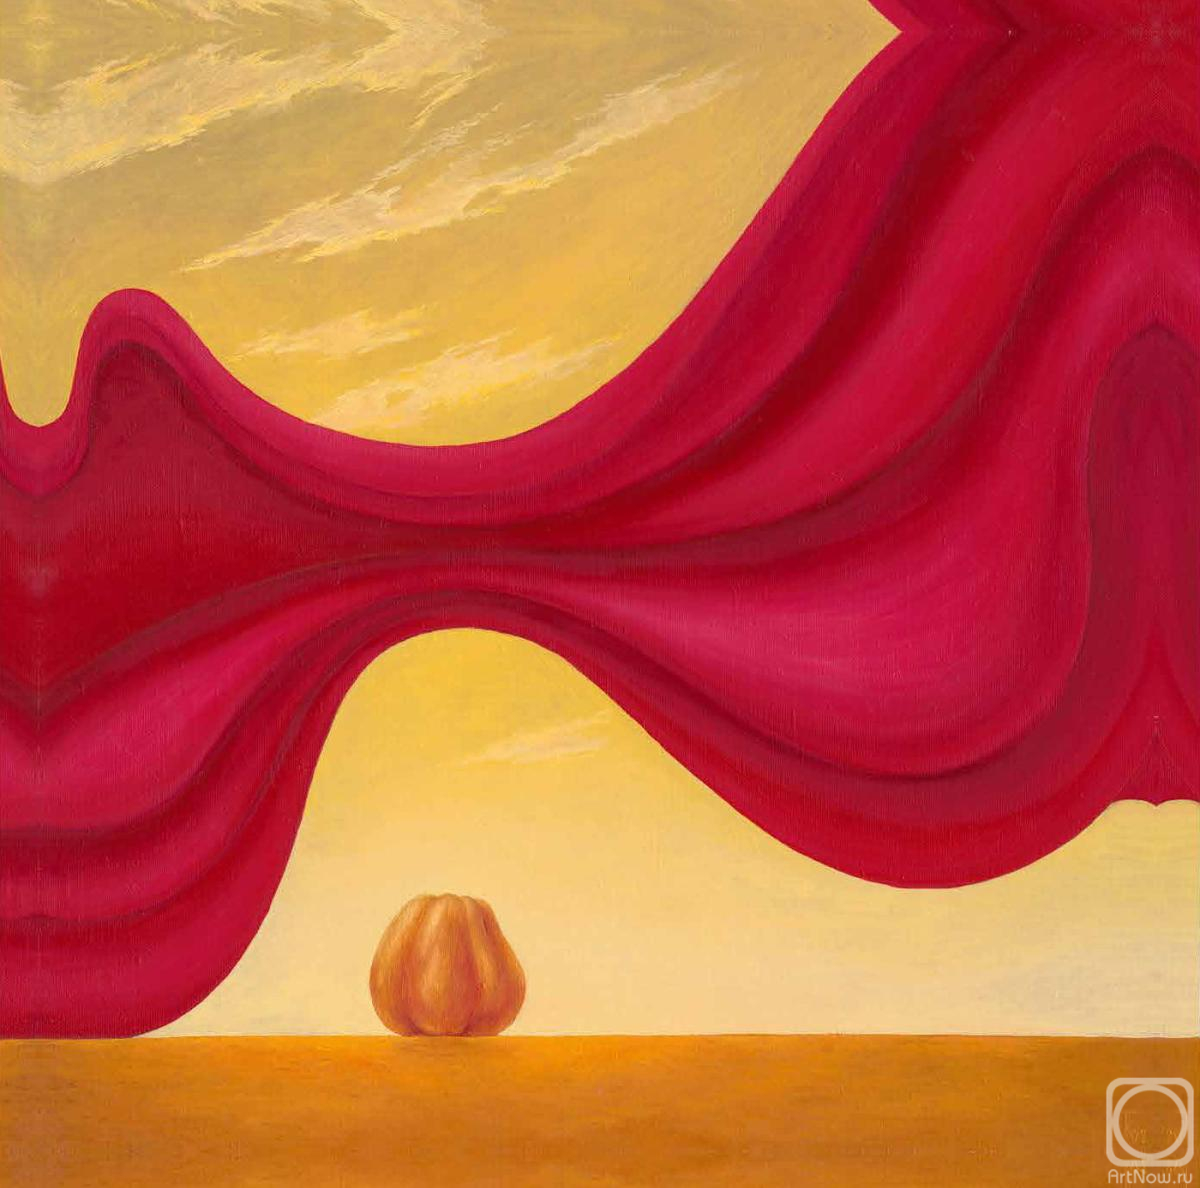 Театр одного яблока» картина Курочкина Геннадия маслом на холсте — купить  на ArtNow.ru